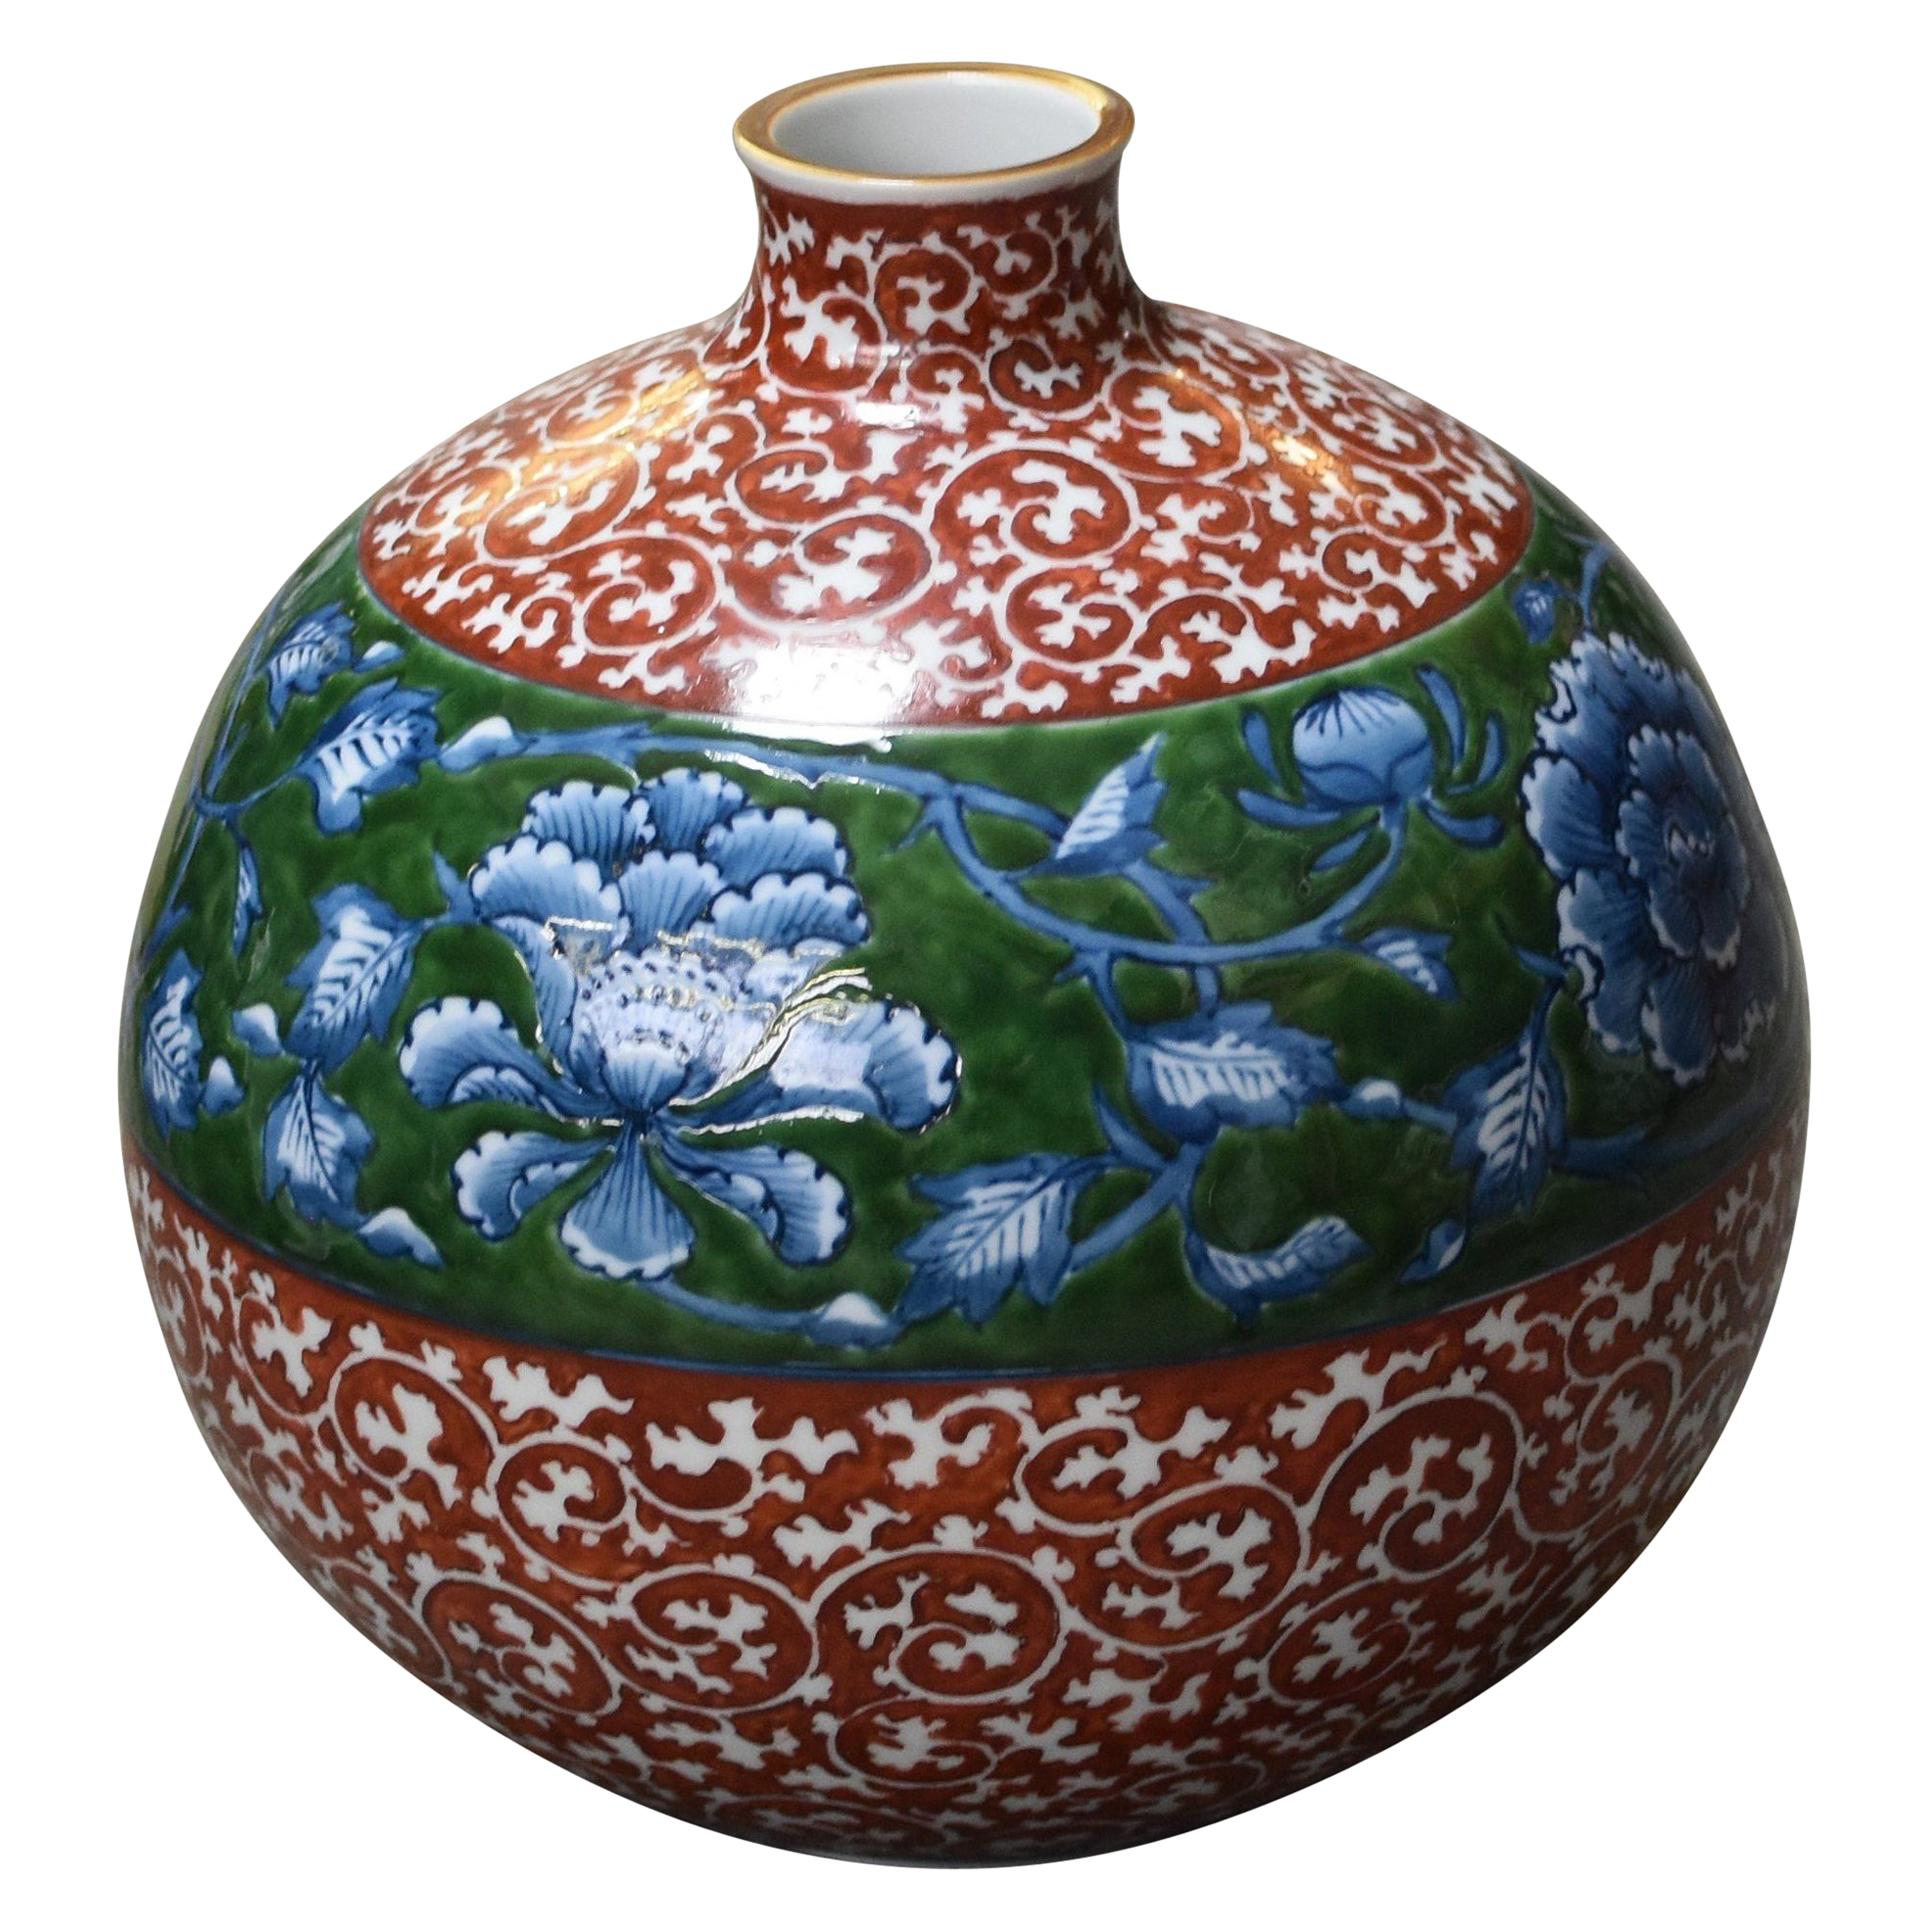 Zeitgenössische Rot-Blau-Grün-Porzellan-Vase von japanischem Meisterkünstler